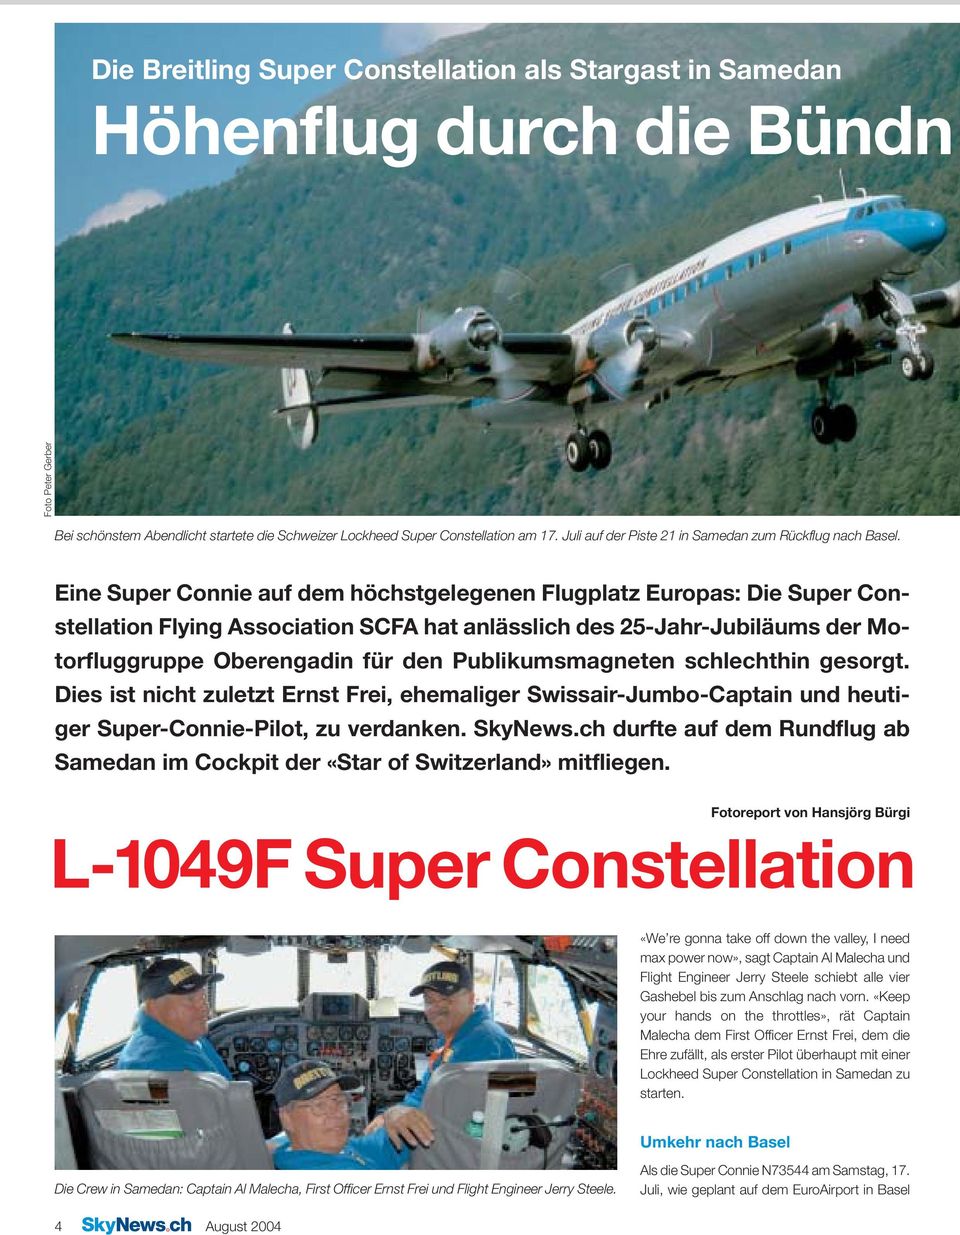 Eine Super Connie auf dem höchstgelegenen Flugplatz Europas: Die Super Constellation Flying Association SCFA hat anlässlich des 25-Jahr-Jubiläums der Motorfluggruppe Oberengadin für den